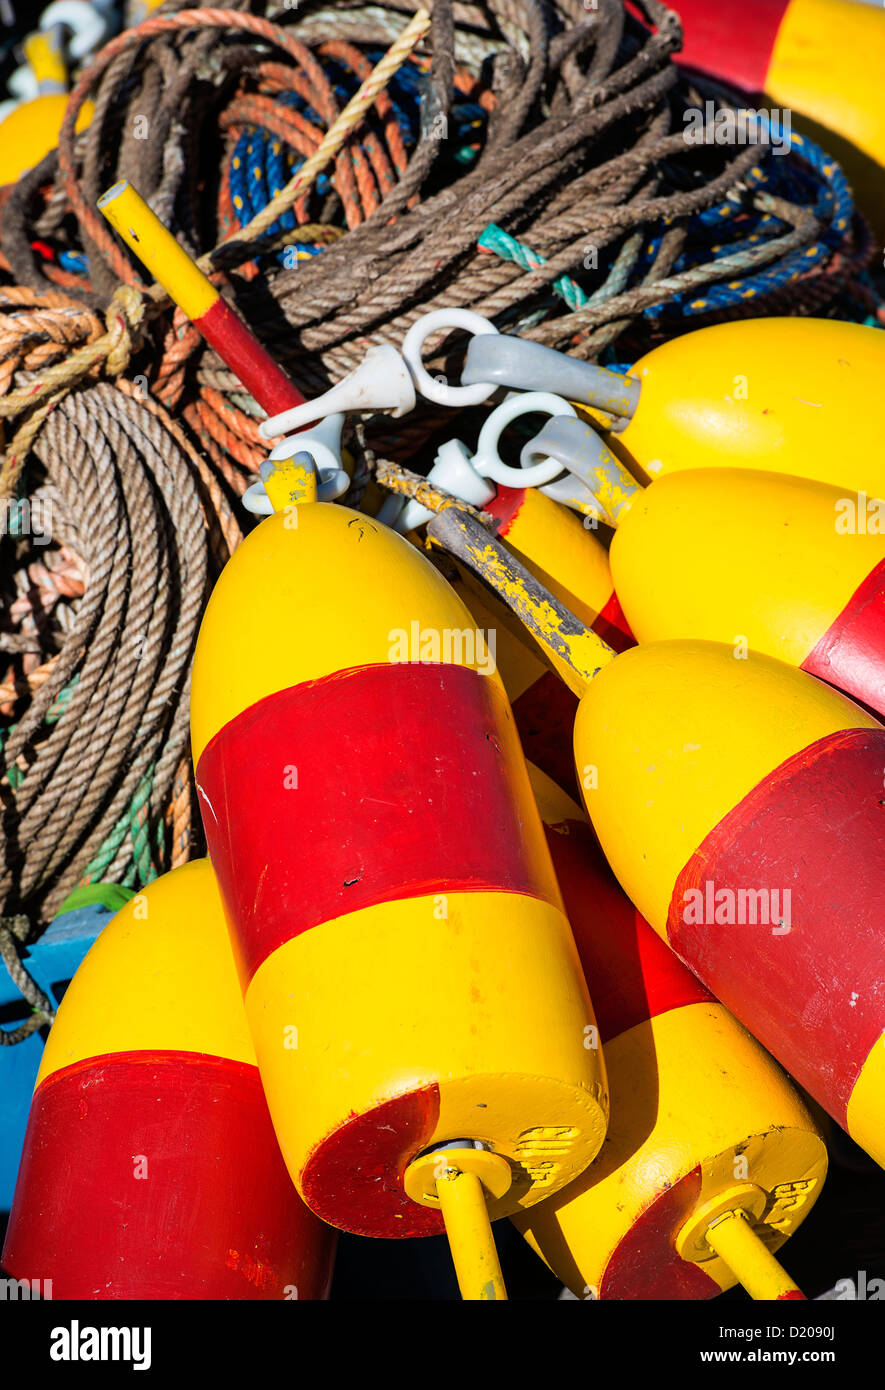 Colorful lobster buoys, Corea, Maine, USA Stock Photo